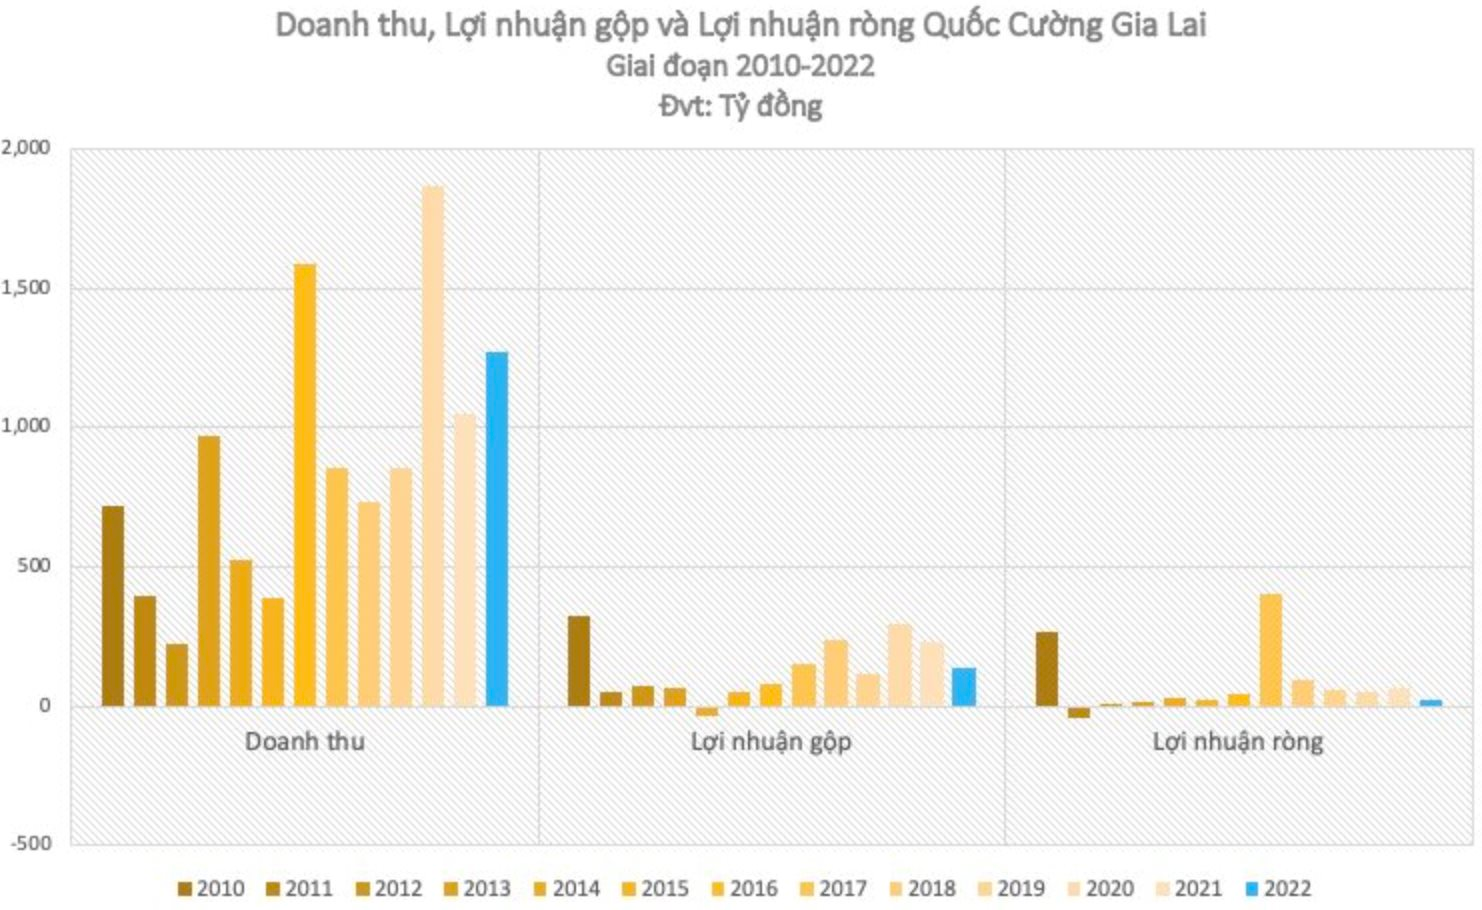 Vừa xong giải trình, cổ phiếu QCG tiếp tục kịch trần ghi nhận mức tăng 60% sau 10 phiên, “ăn mừng chiến thắng” vụ Phước Kiển - Ảnh 3.